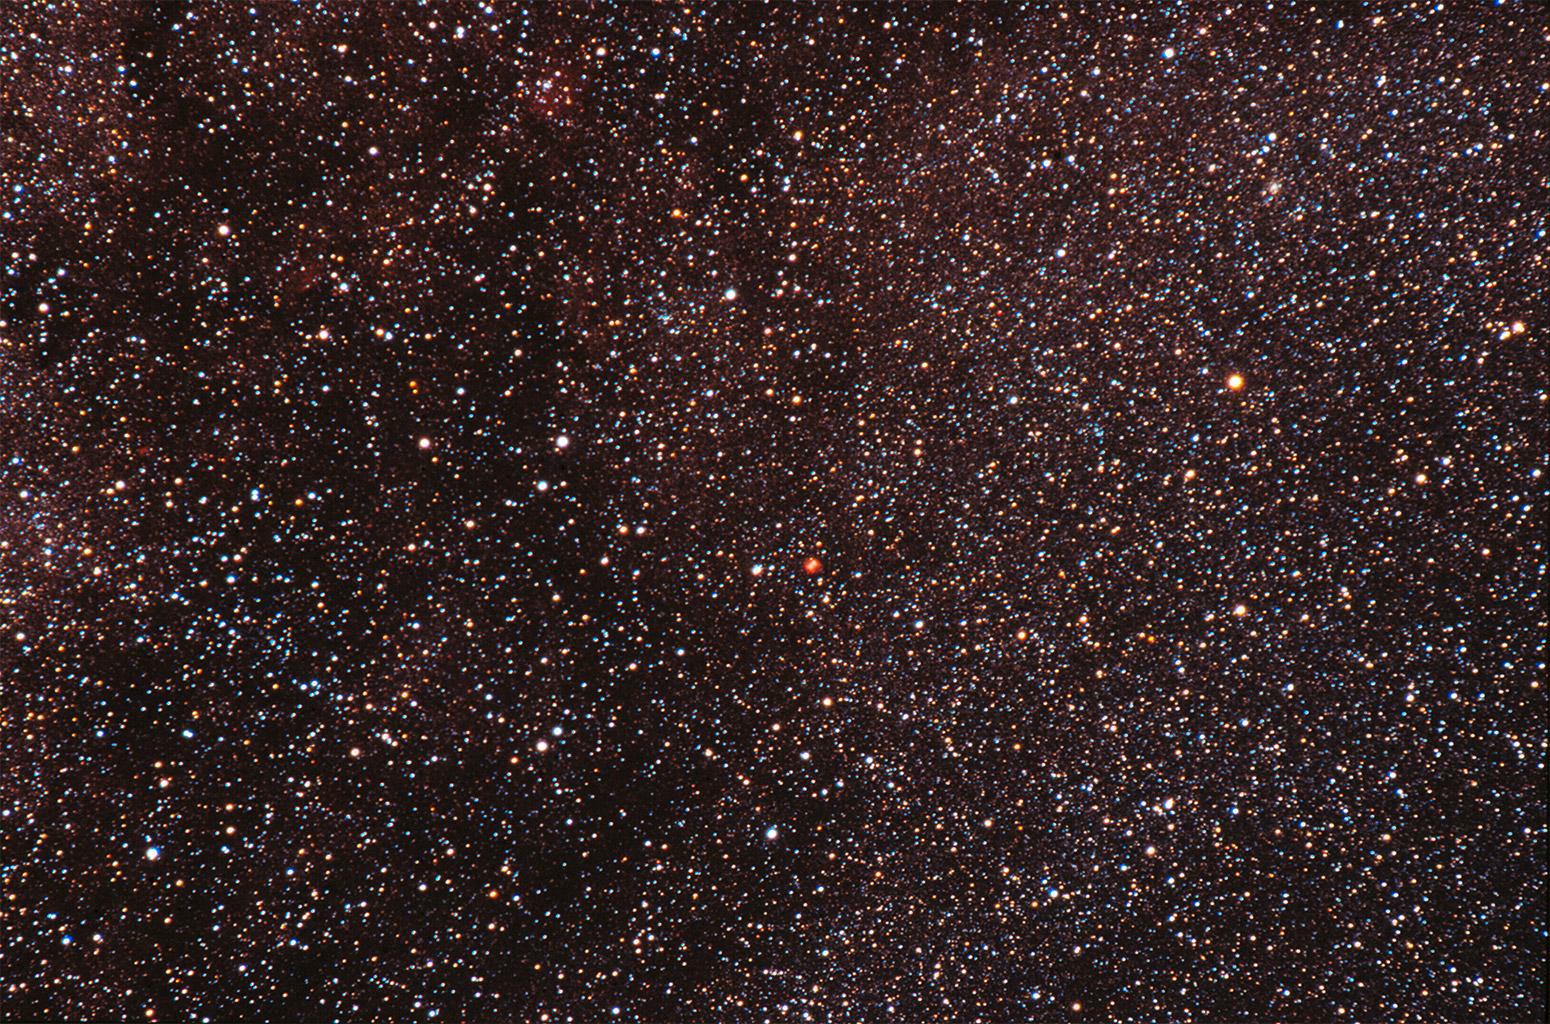 Dumbbell-Nebula (Vul)